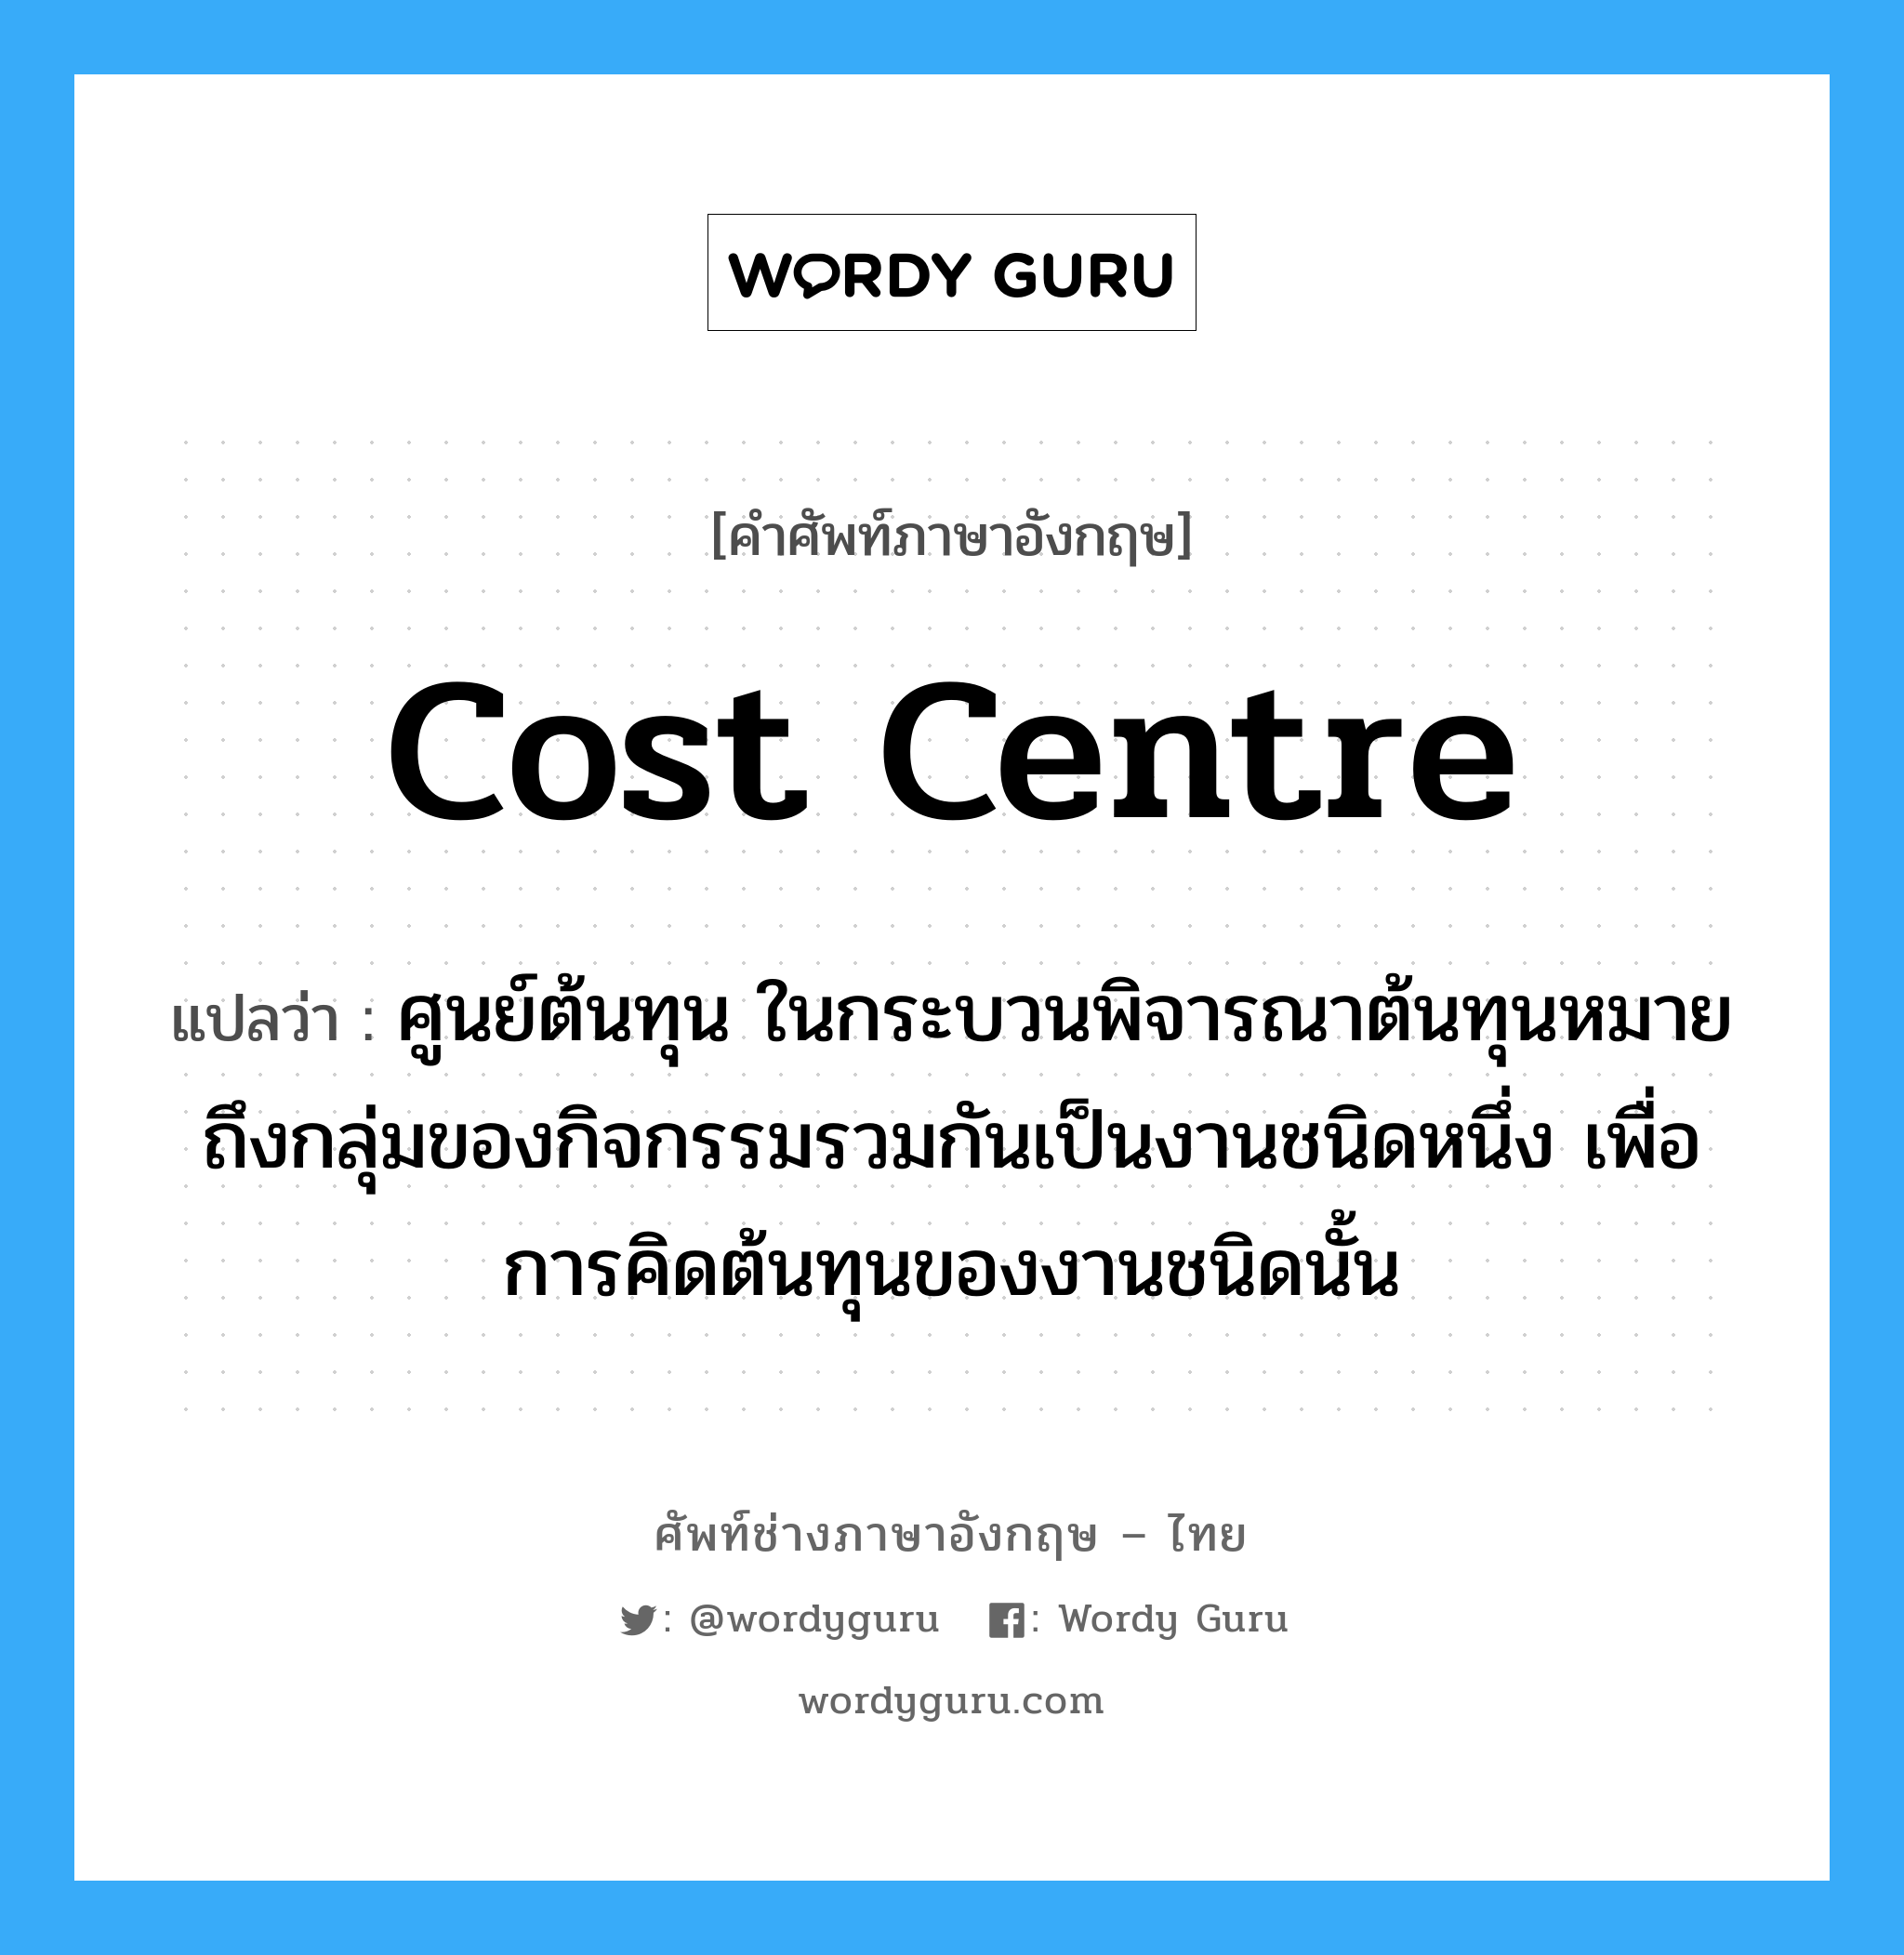 Cost Centre แปลว่า?, คำศัพท์ช่างภาษาอังกฤษ - ไทย Cost Centre คำศัพท์ภาษาอังกฤษ Cost Centre แปลว่า ศูนย์ต้นทุน ในกระบวนพิจารณาต้นทุนหมายถึงกลุ่มของกิจกรรมรวมกันเป็นงานชนิดหนึ่ง เพื่อการคิดต้นทุนของงานชนิดนั้น